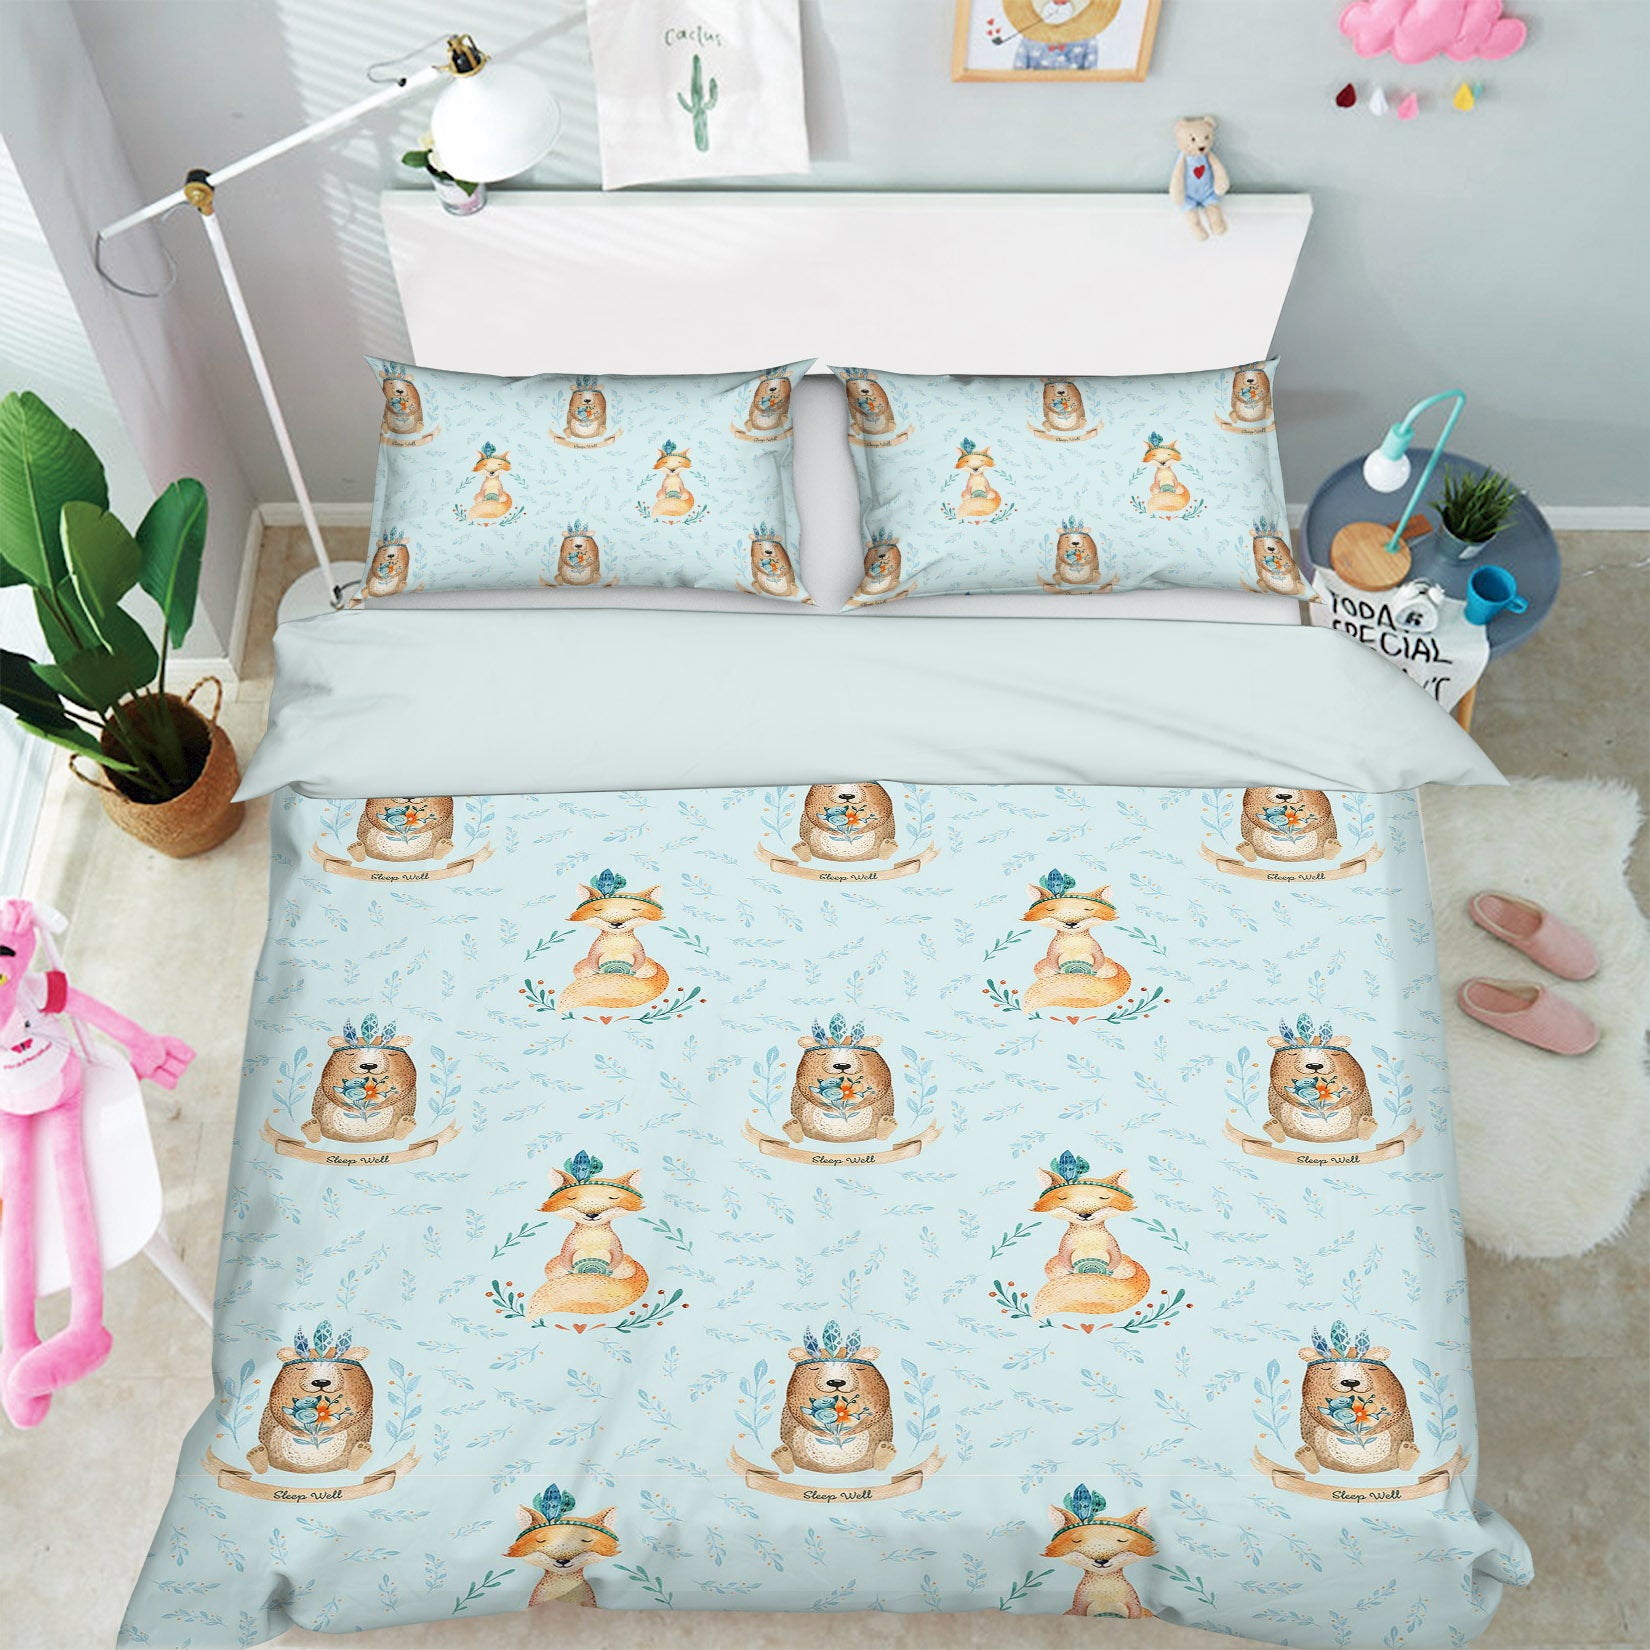 3D Fox Bear Flower 212 Uta Naumann Bedding Bed Pillowcases Quilt